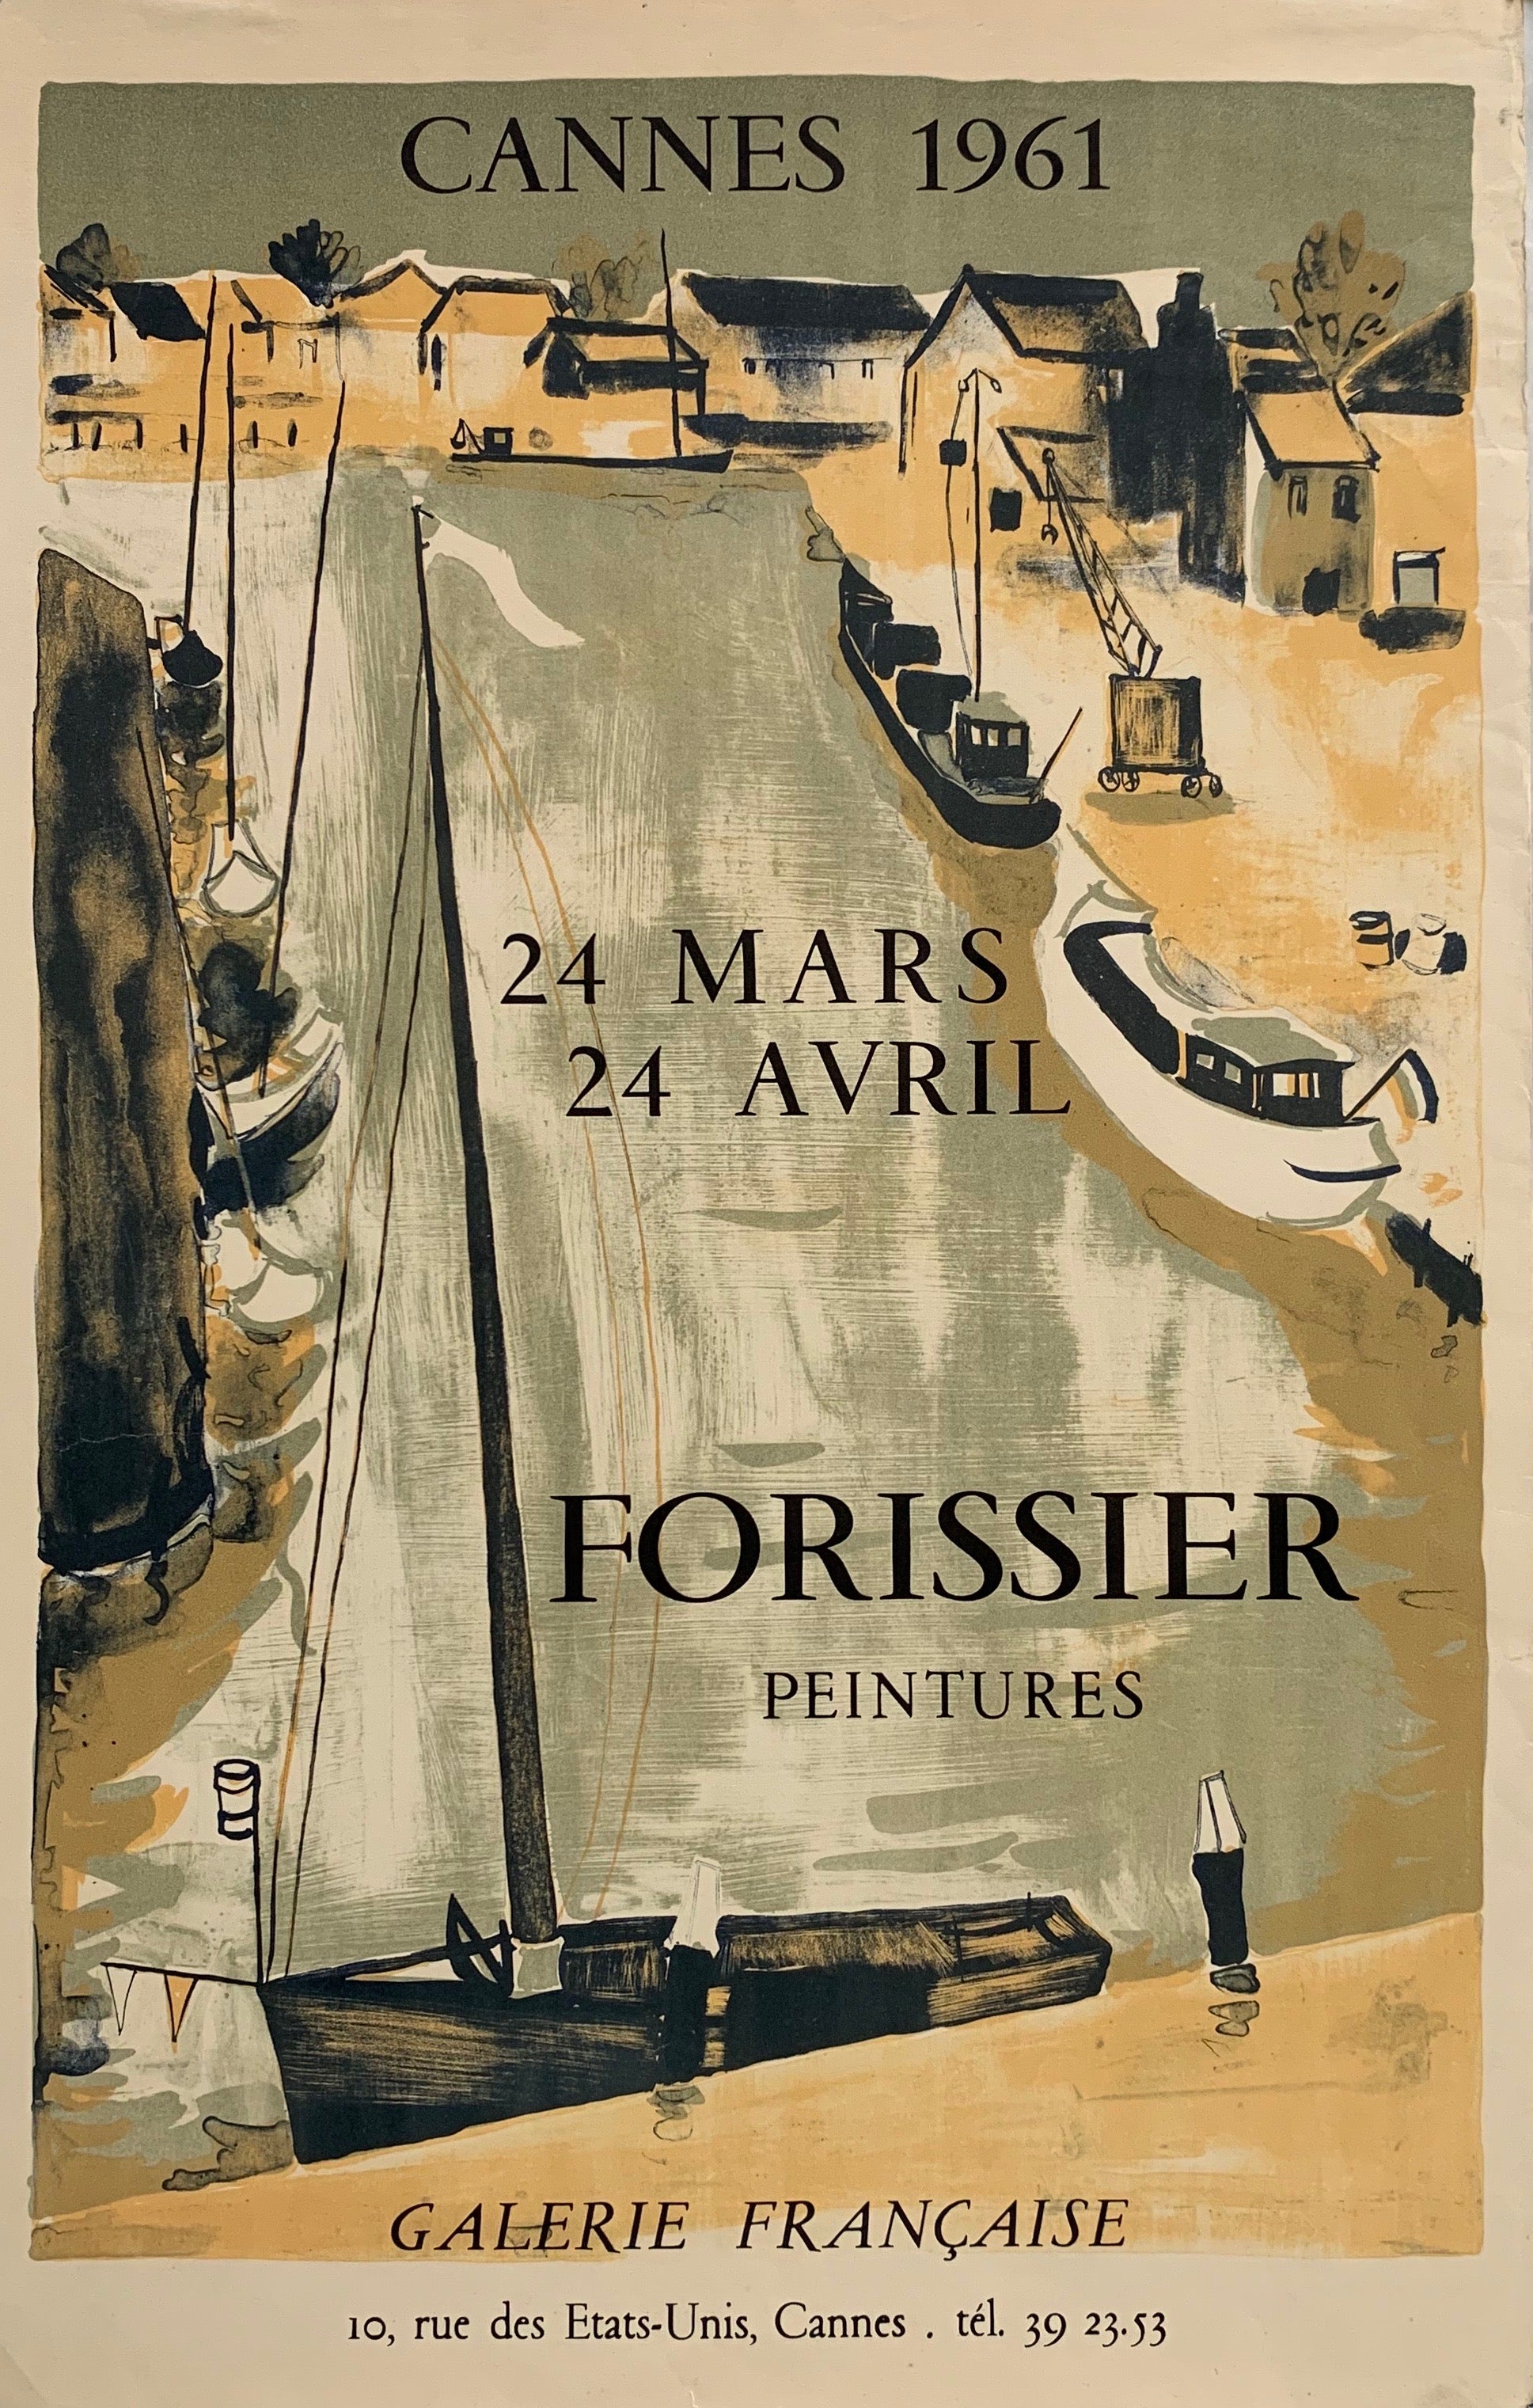 Cannes 1961 - Forissier Peintures